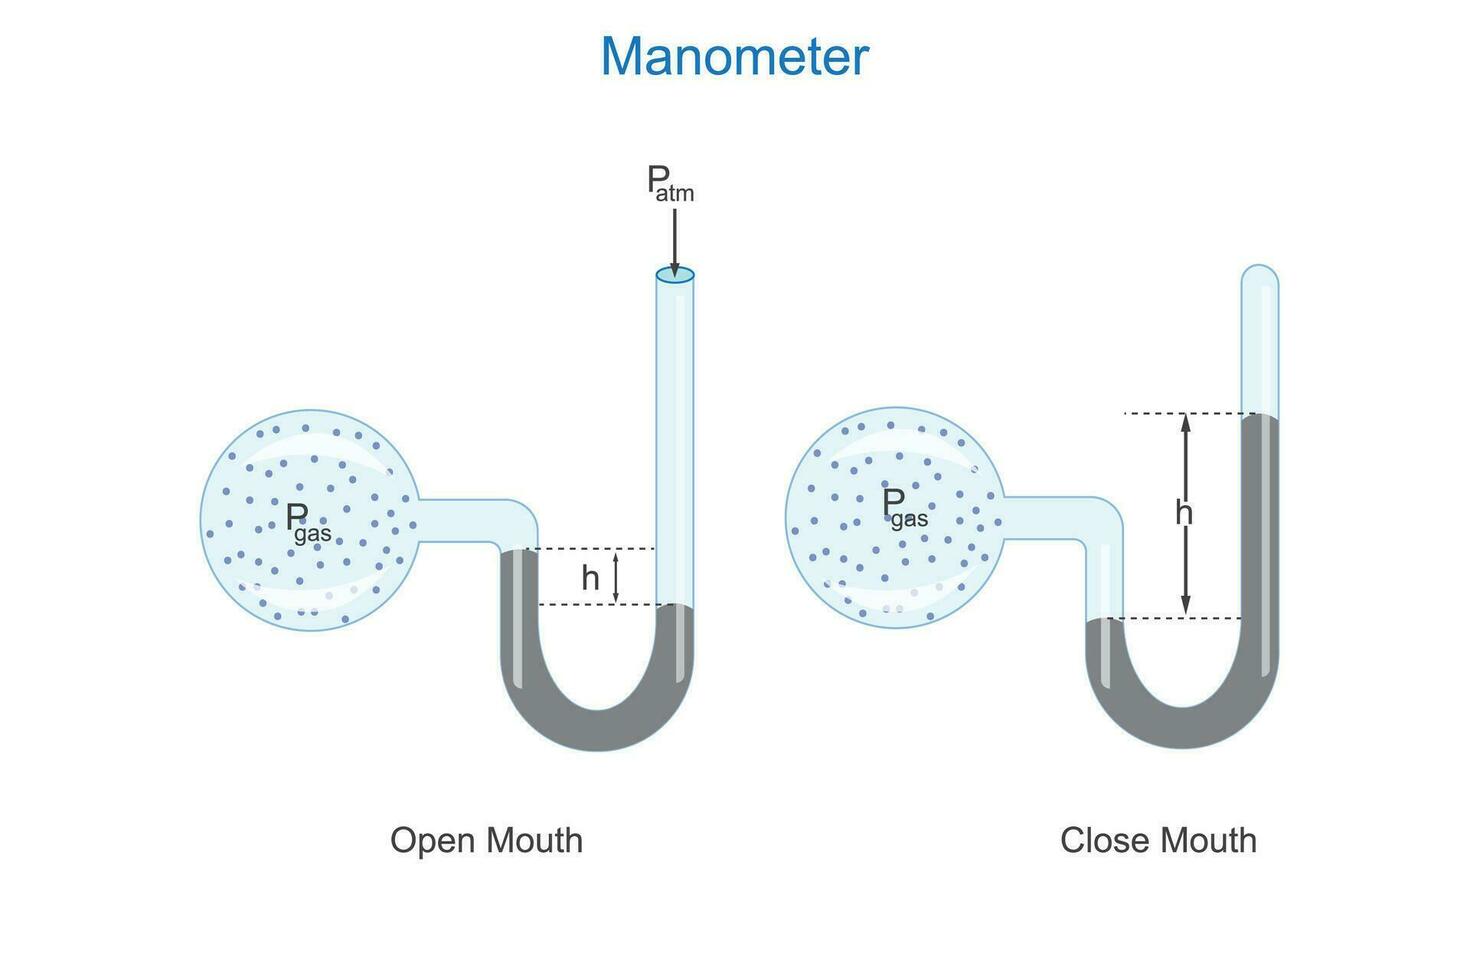 manometer. meten gas- druk gebruik makend van manometers .gesloten en Open einde manometer. vector